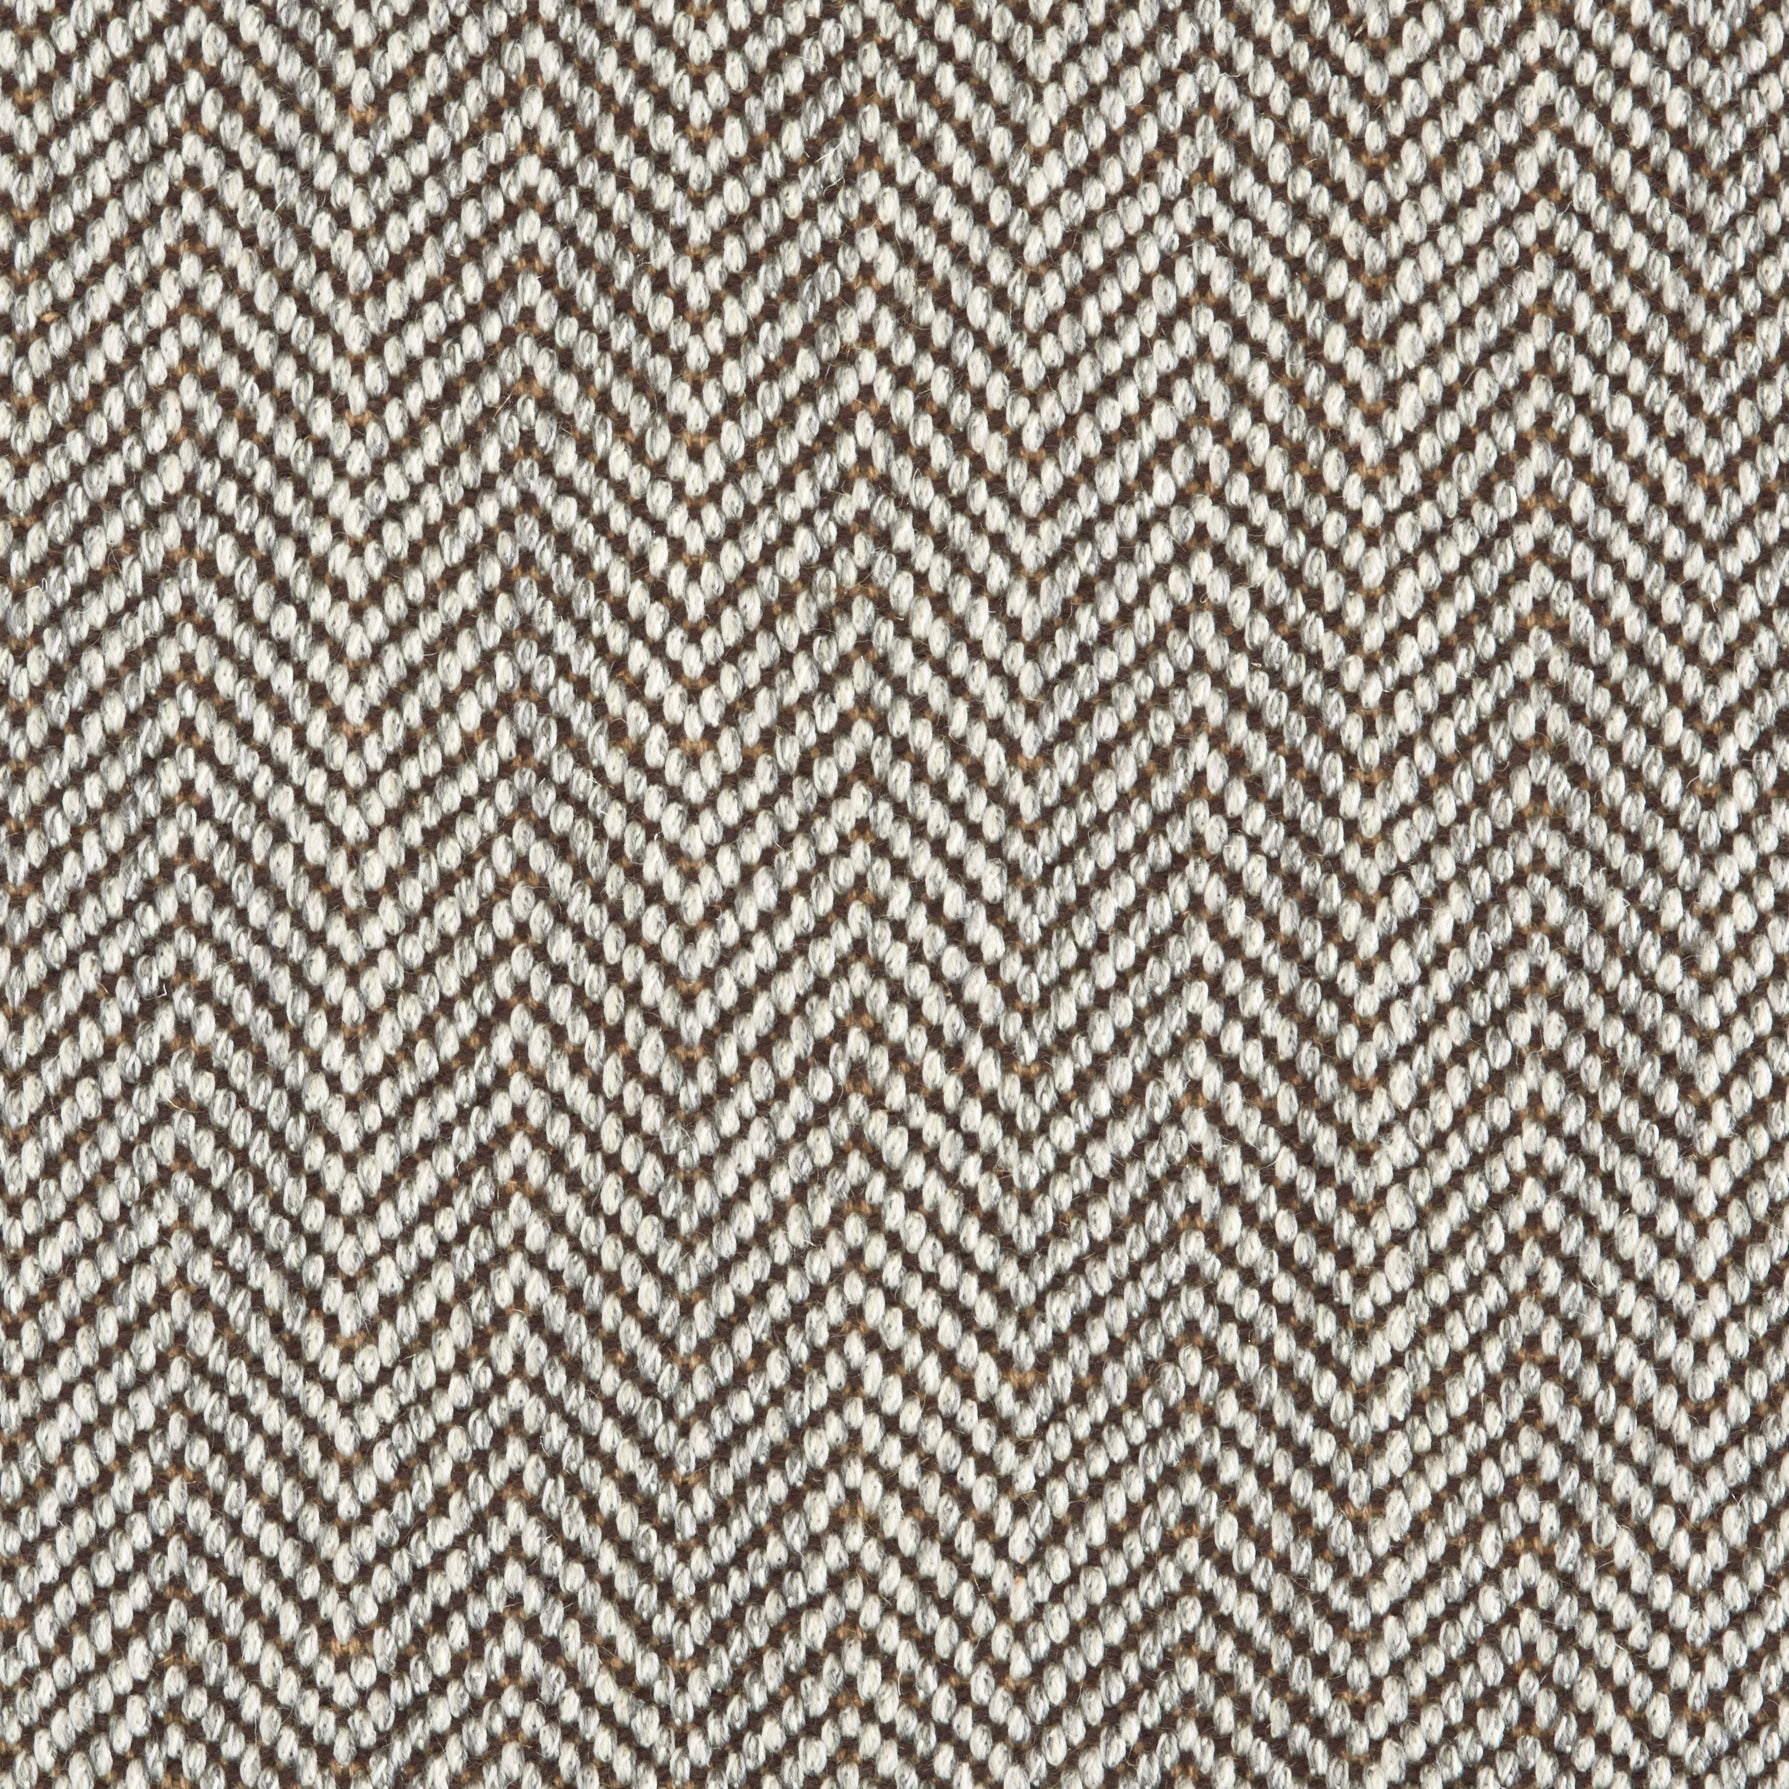 Wool broadloom carpet swatch in a herringbone weave in cream and brown.